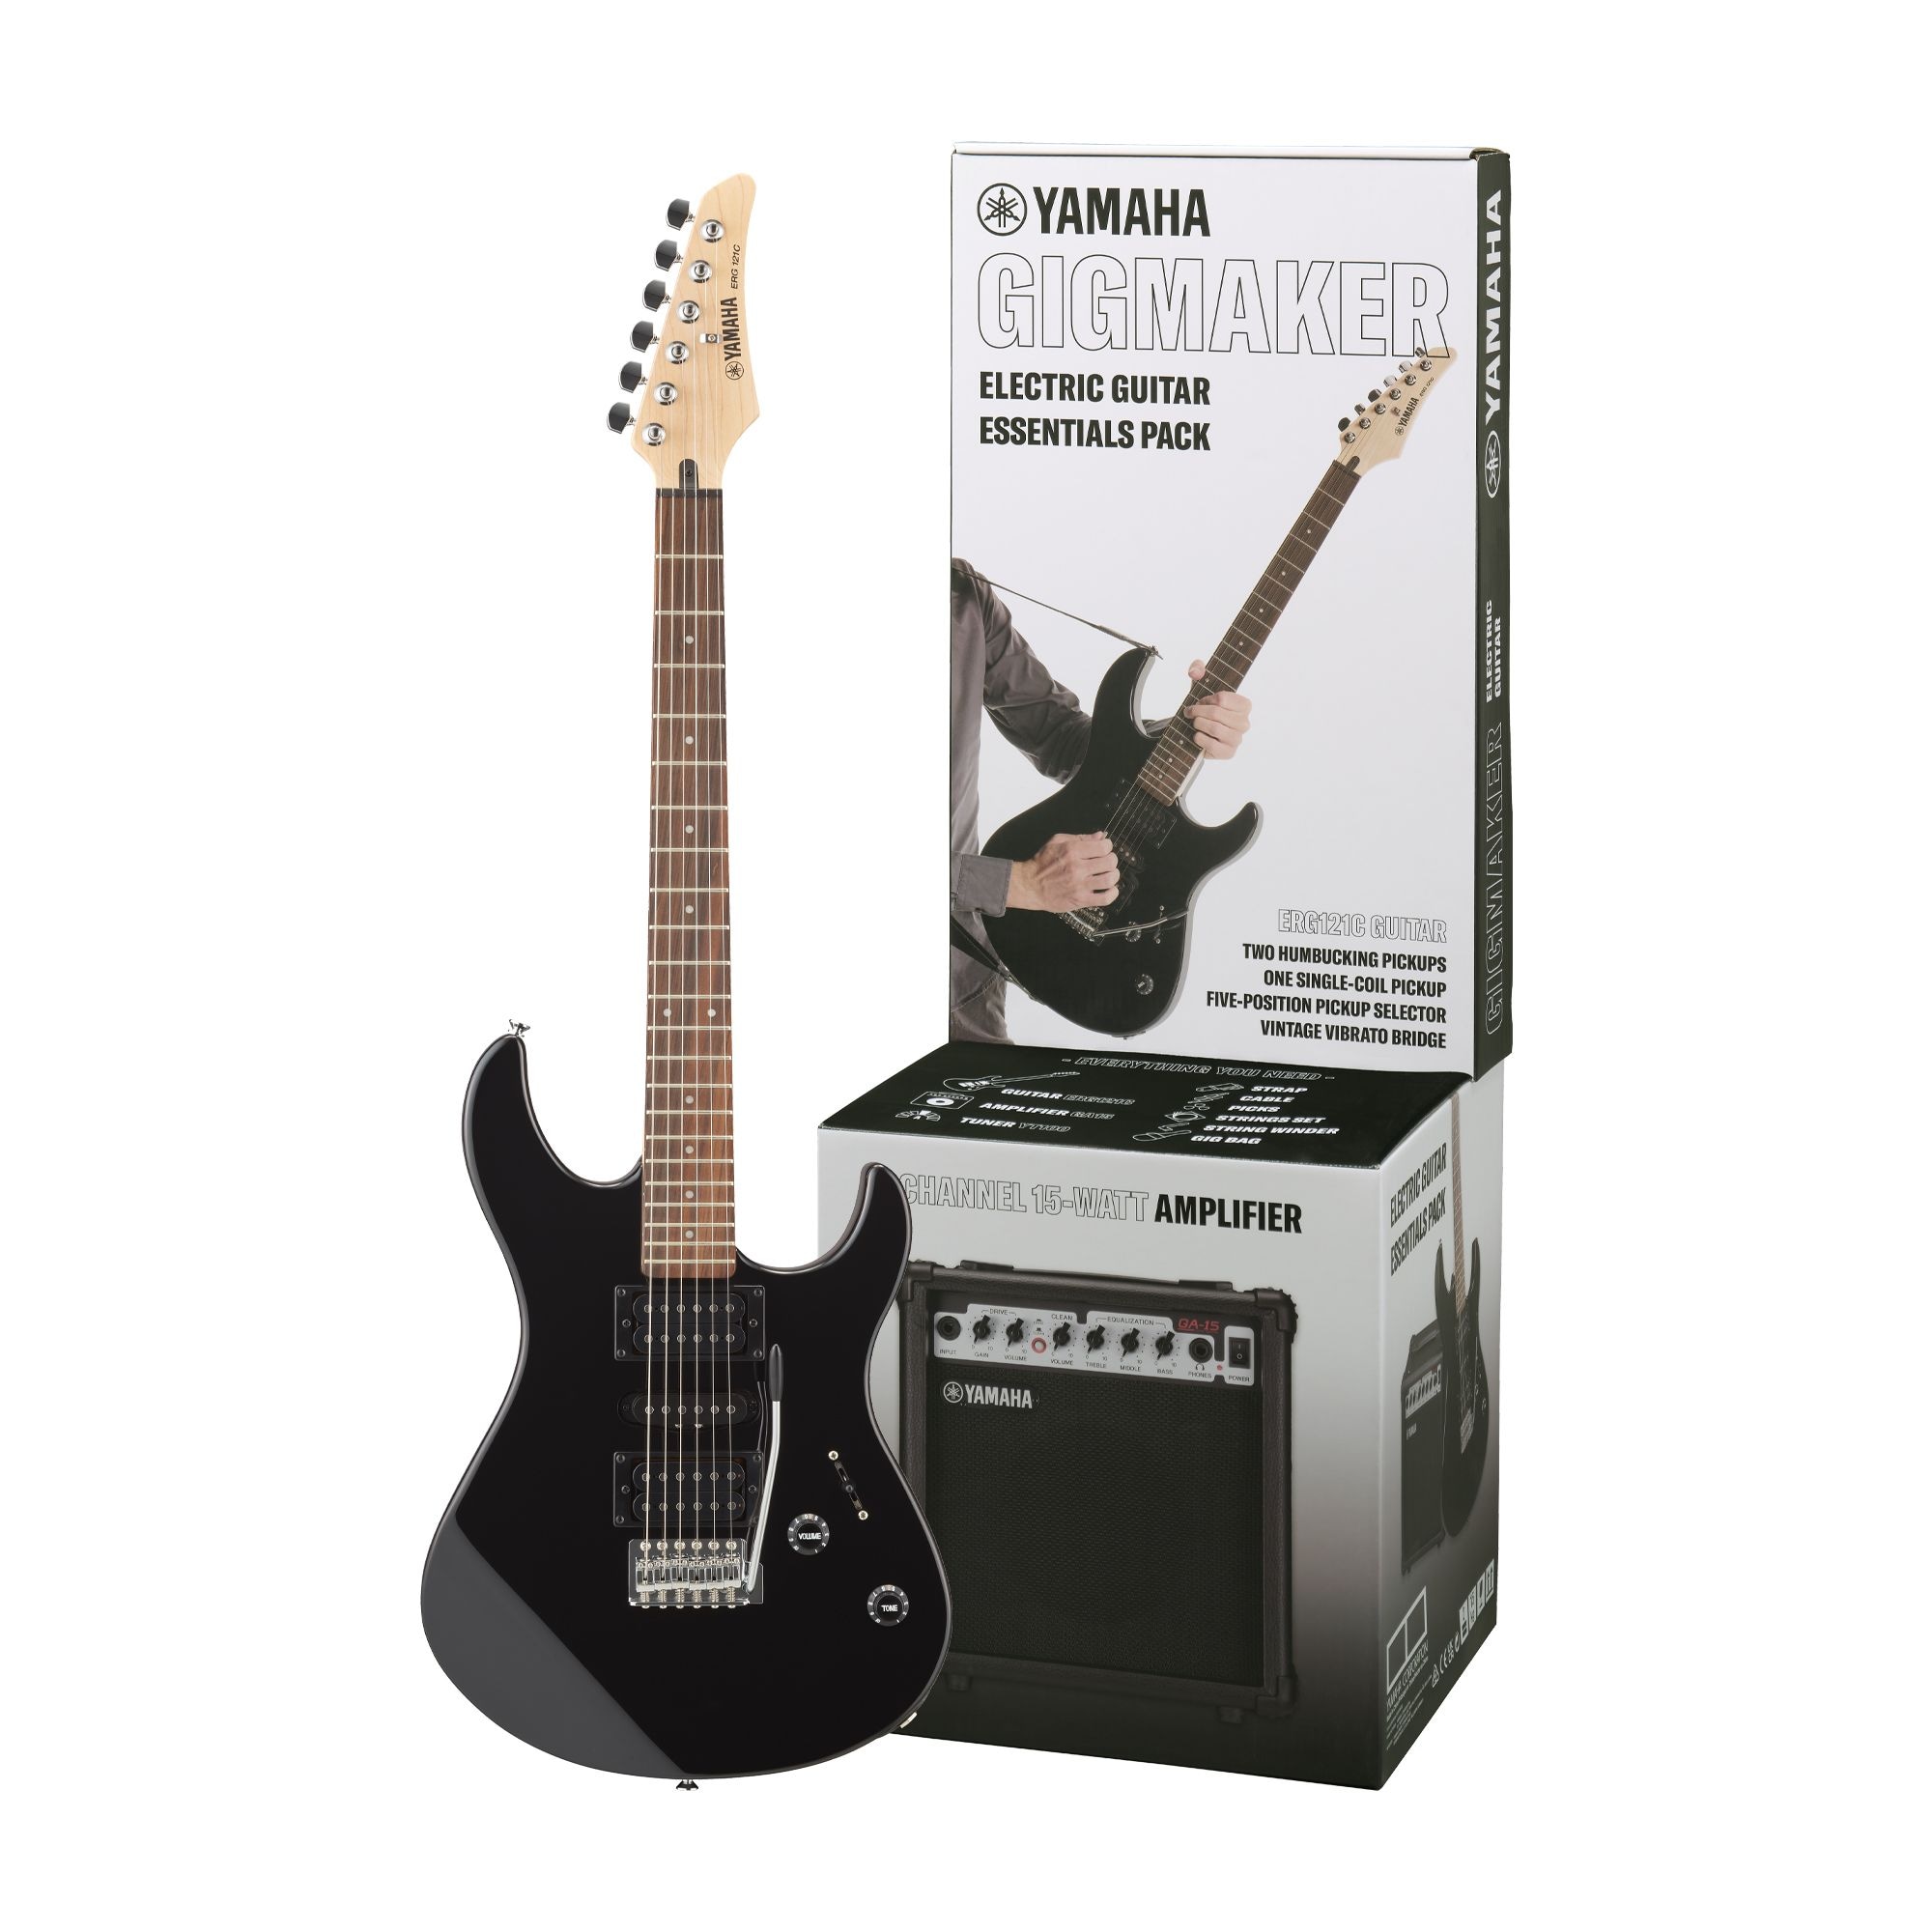 GIGMAKER - Overzicht - Elektrische - Gitaren, basgitaren en versterkers - Muziekinstrumenten - Producten - Yamaha - Nederland / België / Luxemburg